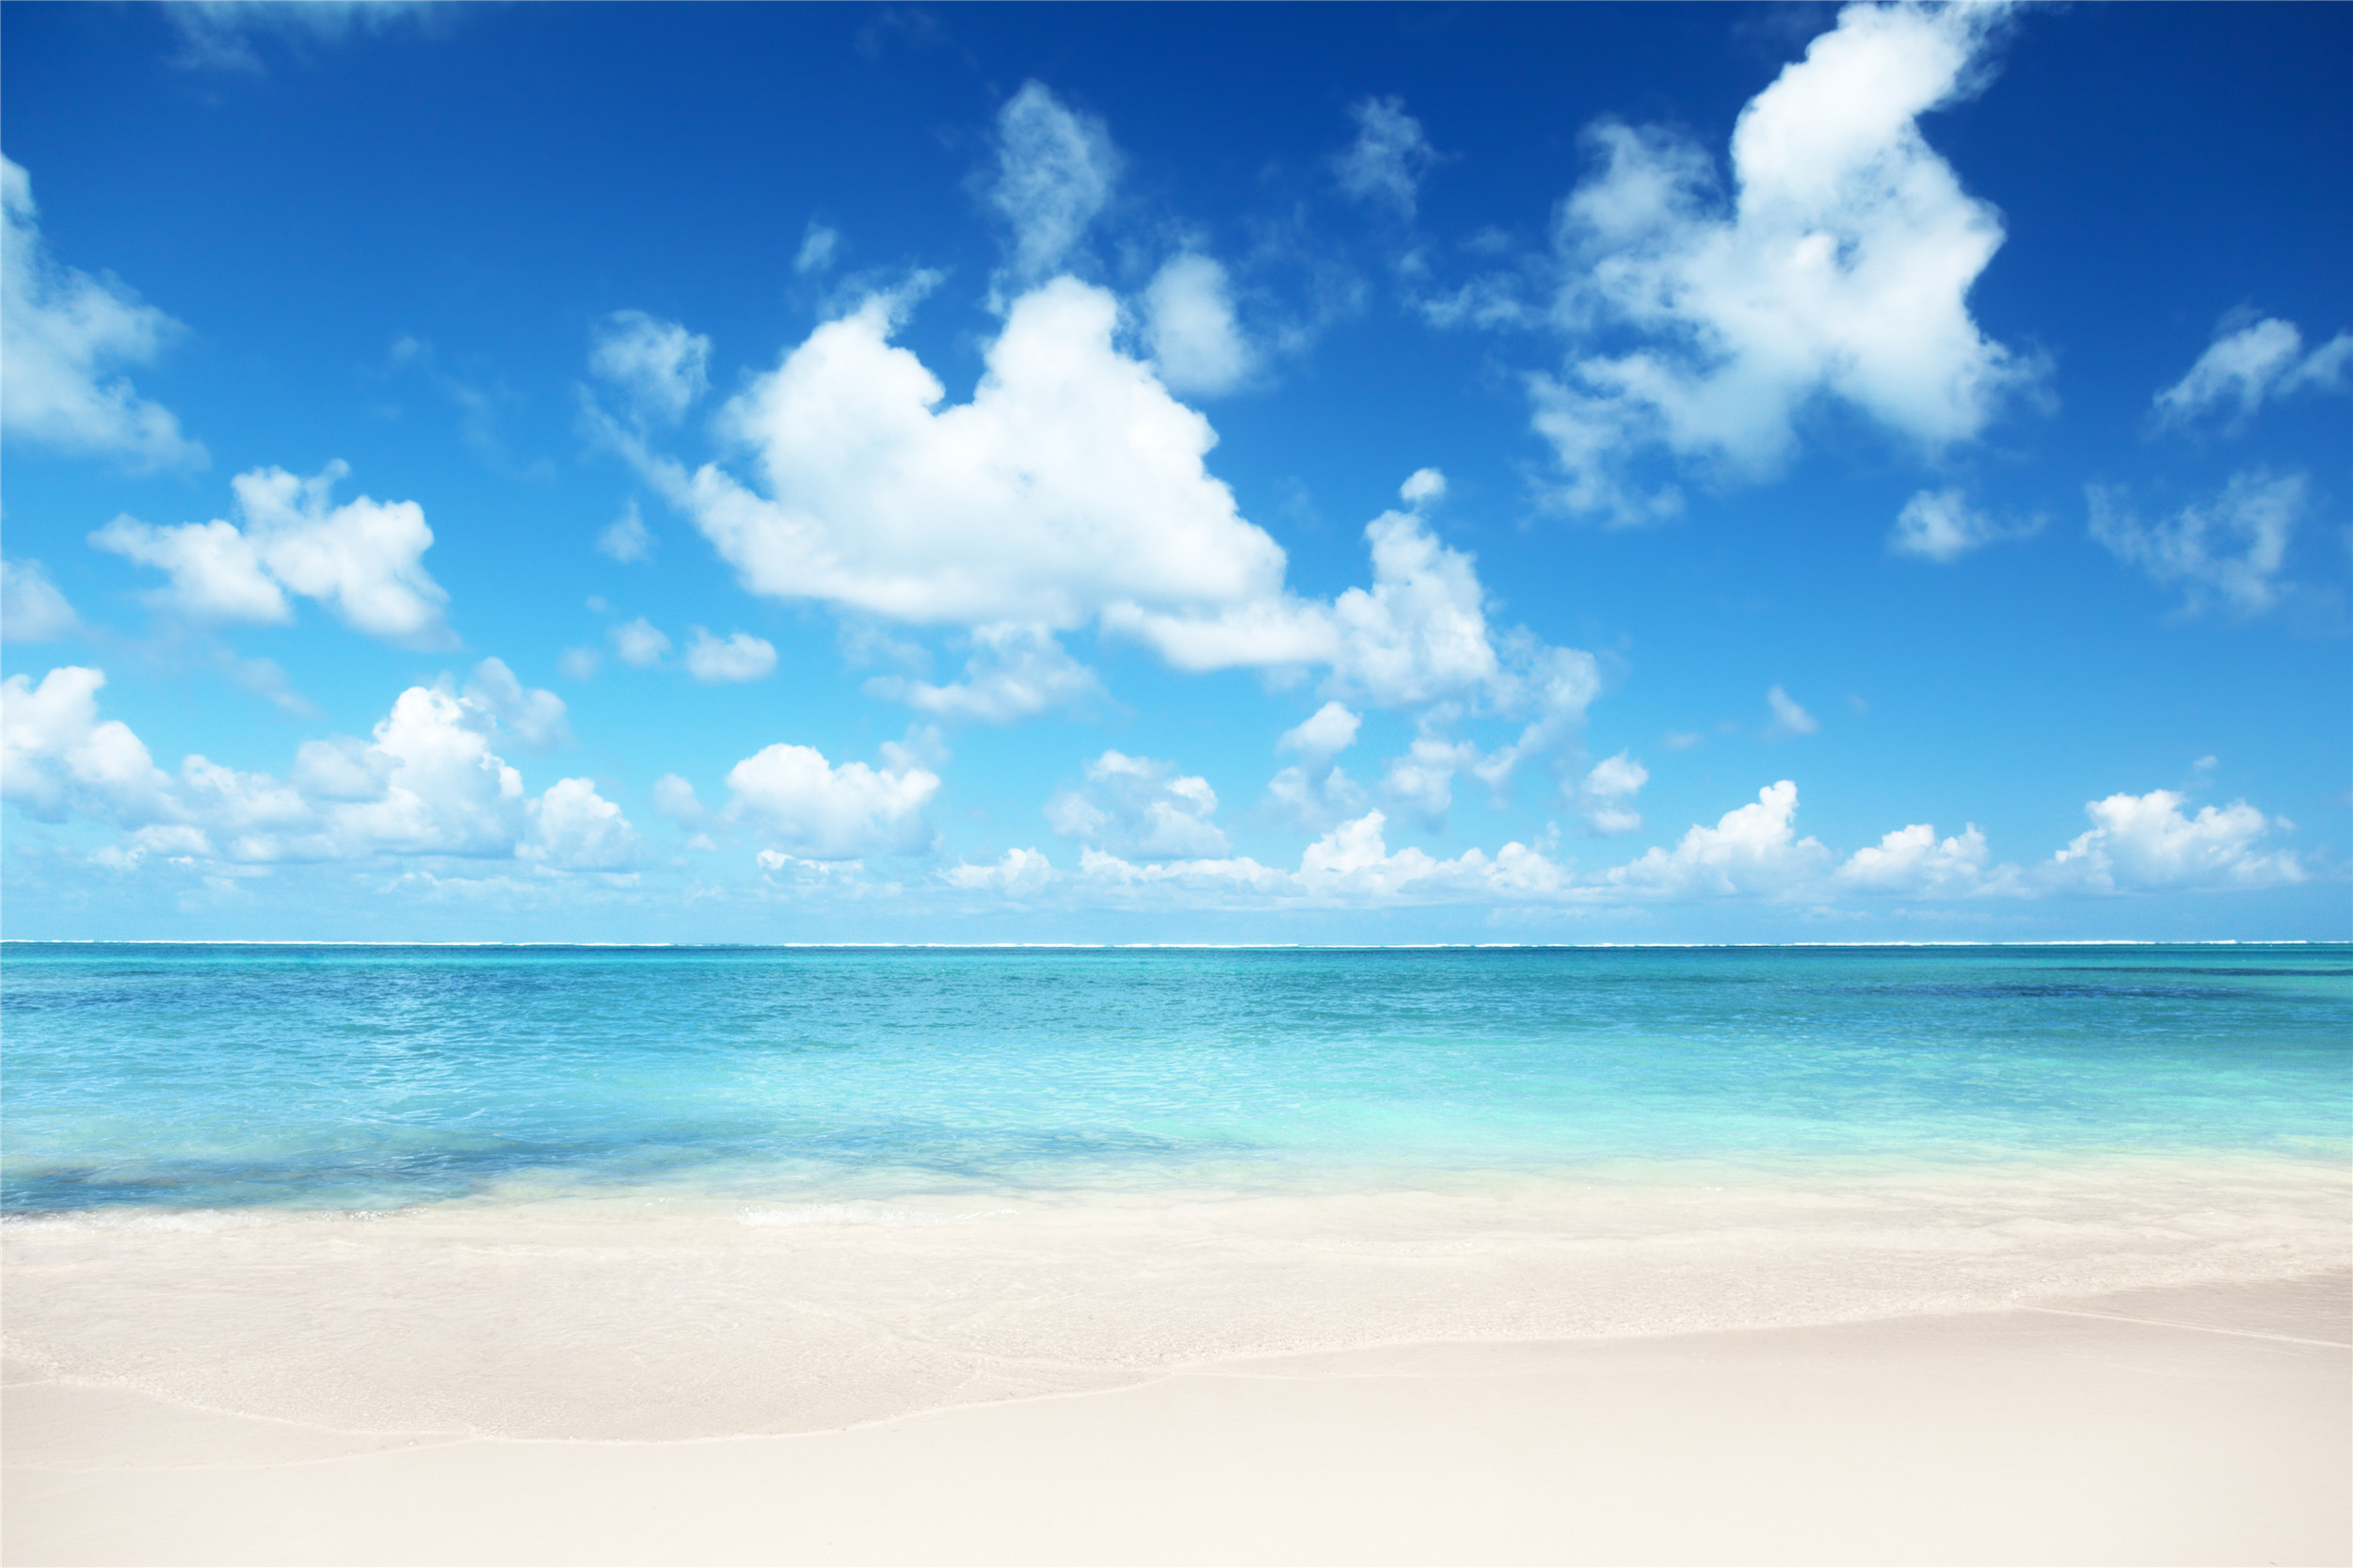 带你们欣赏六张美景图:白色浪花,清澈的海水,你还能看见什么?